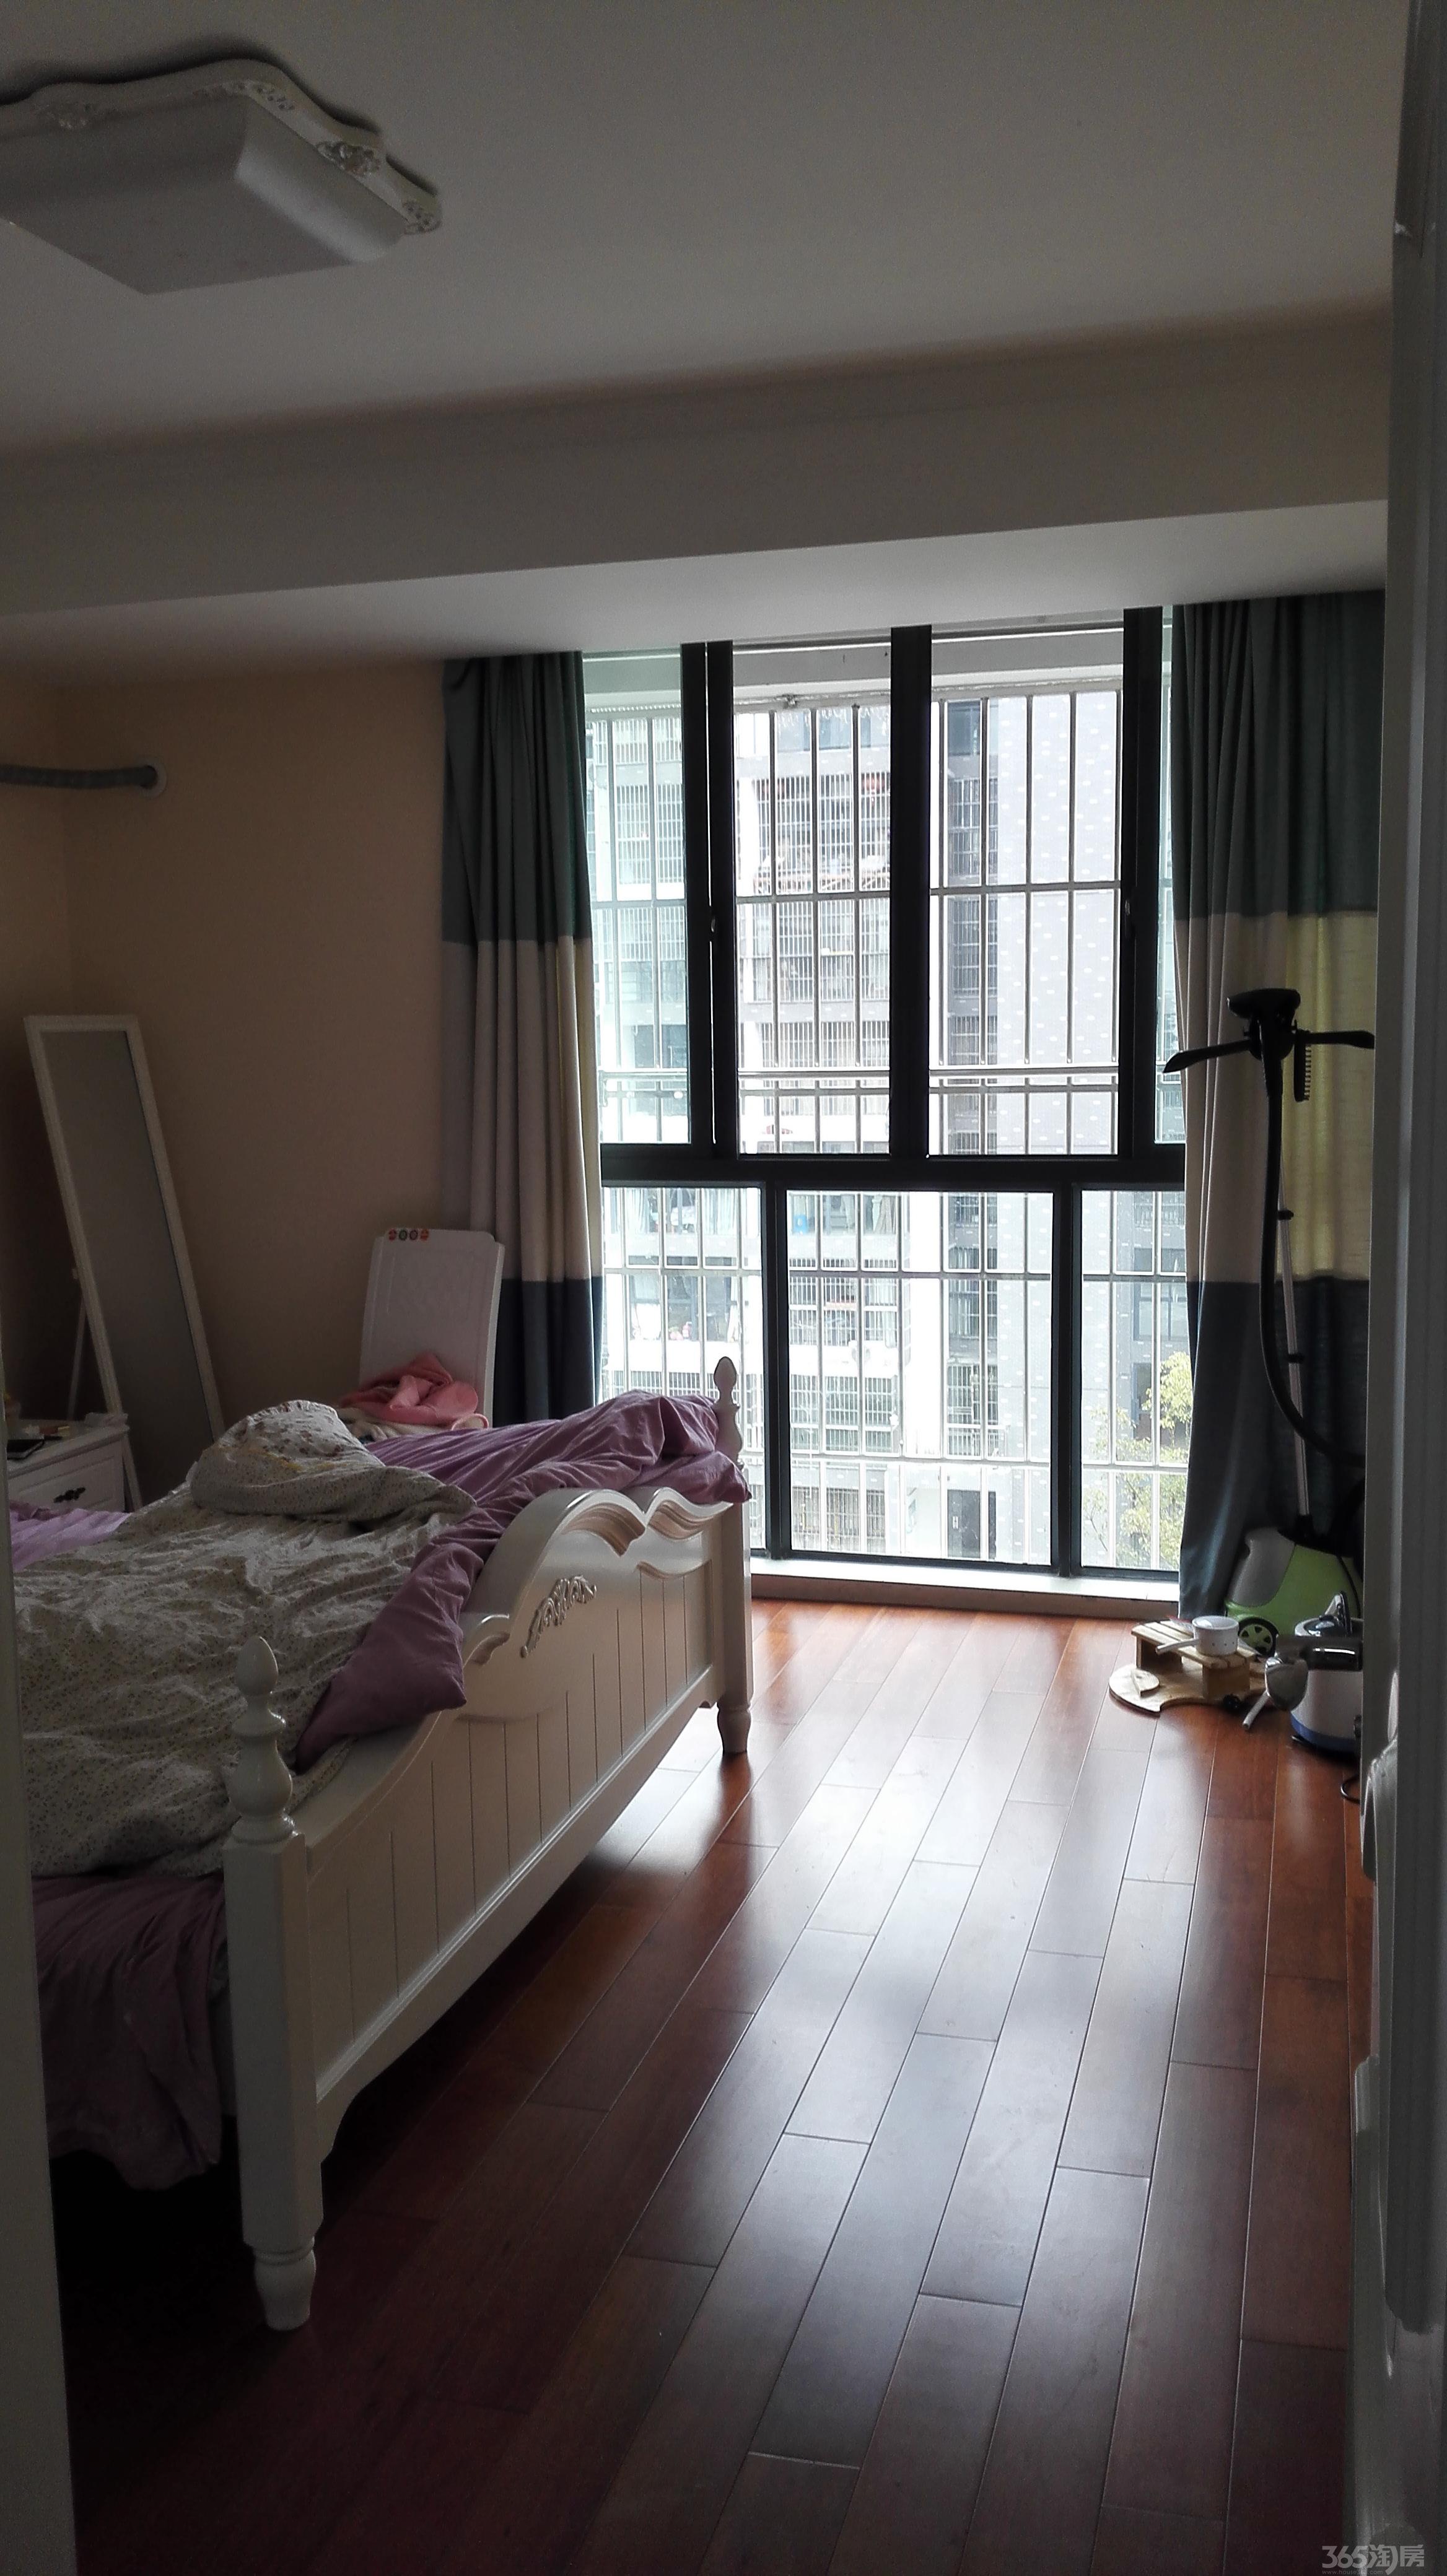 晓庄学区房 宜家国际公寓 精装刚需两房 南北通透 适合居家